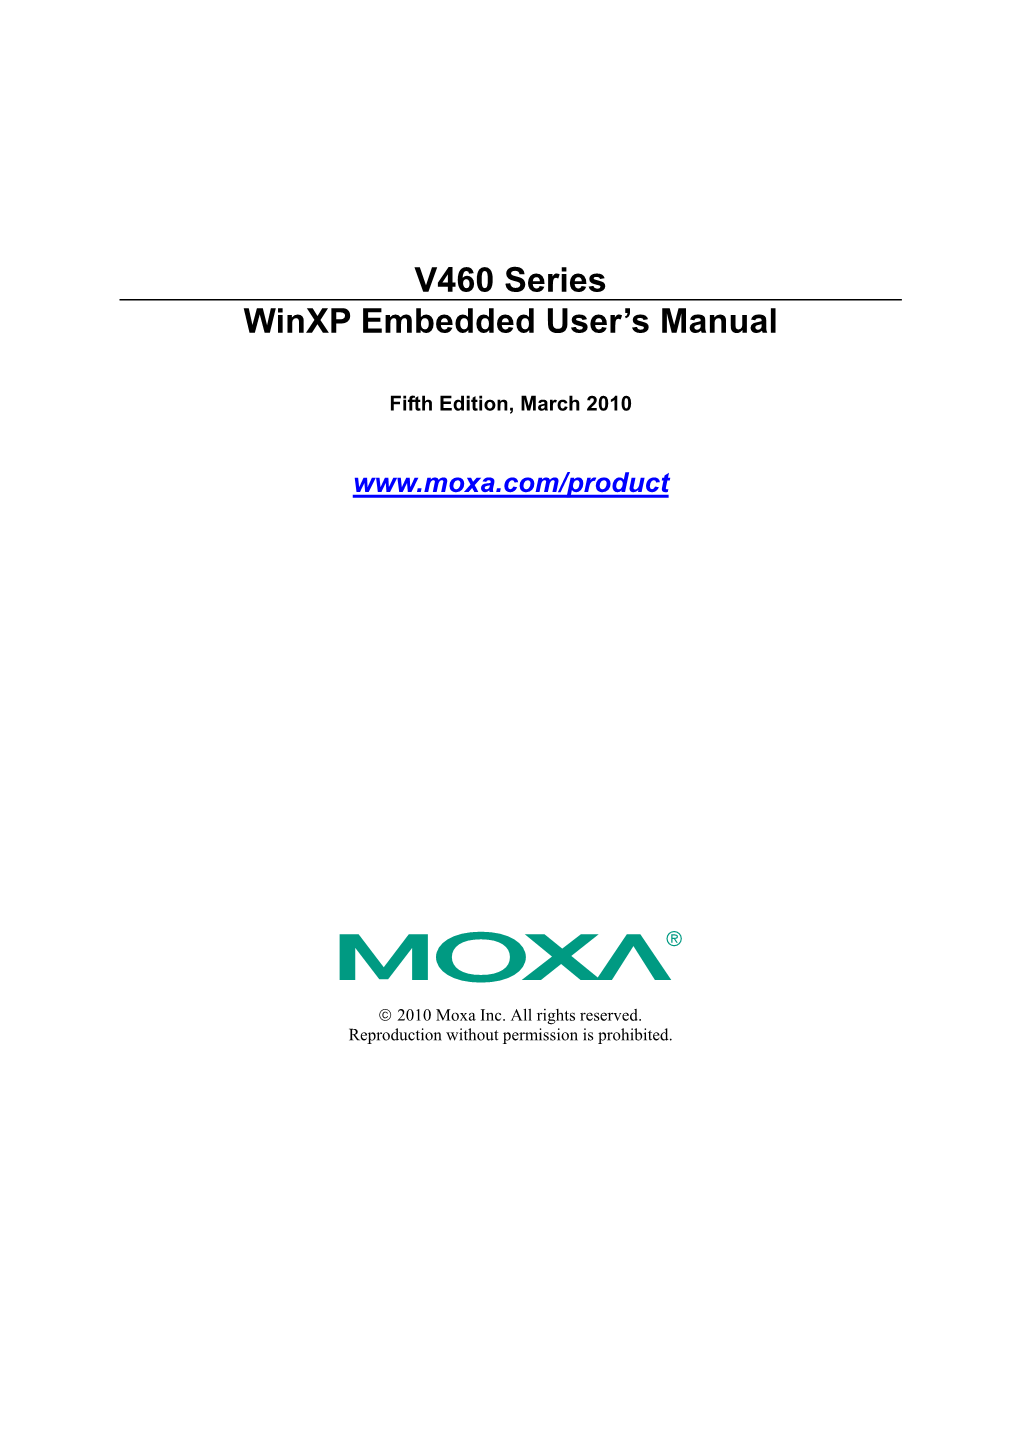 V460-XPE Software User's Manual V4